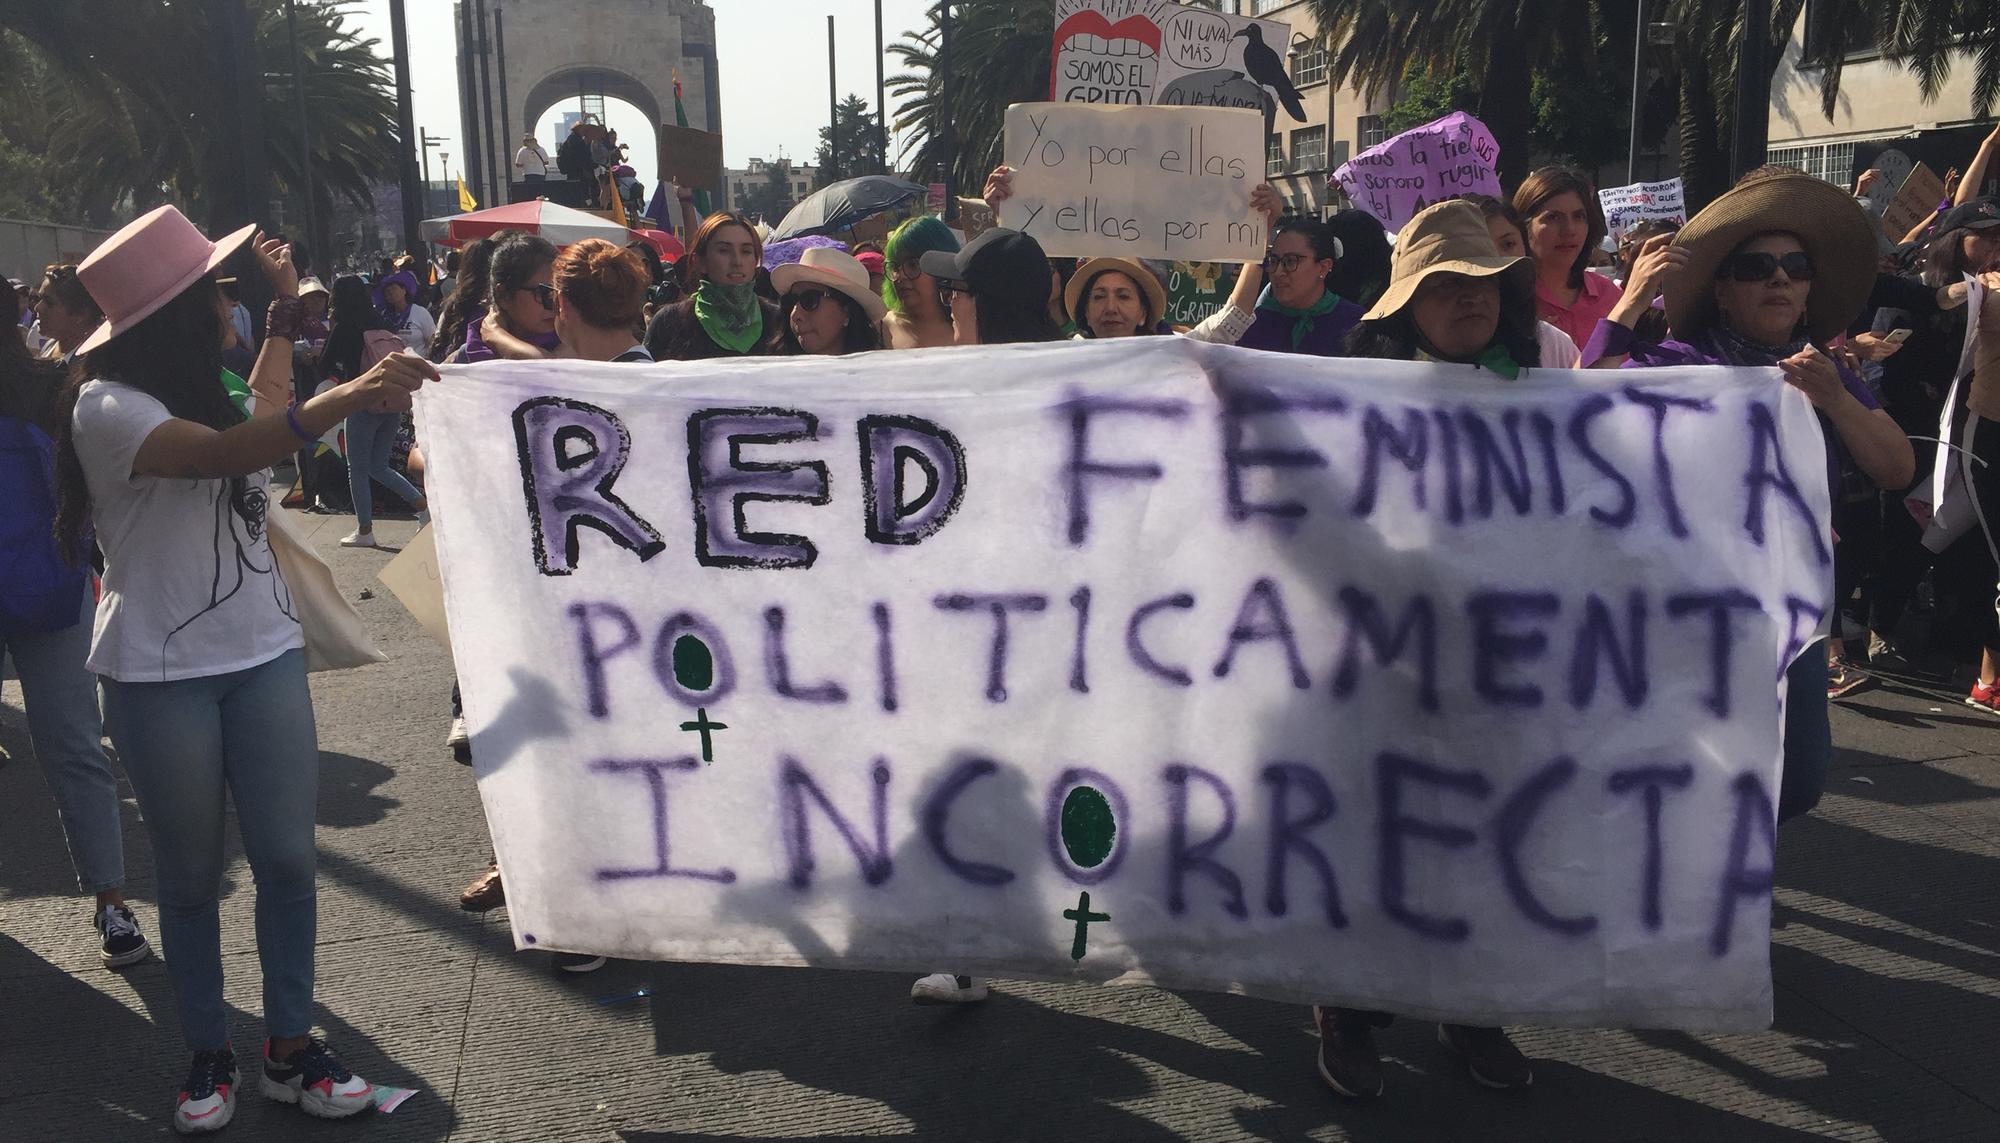 Red Feminista políticamente correcta 